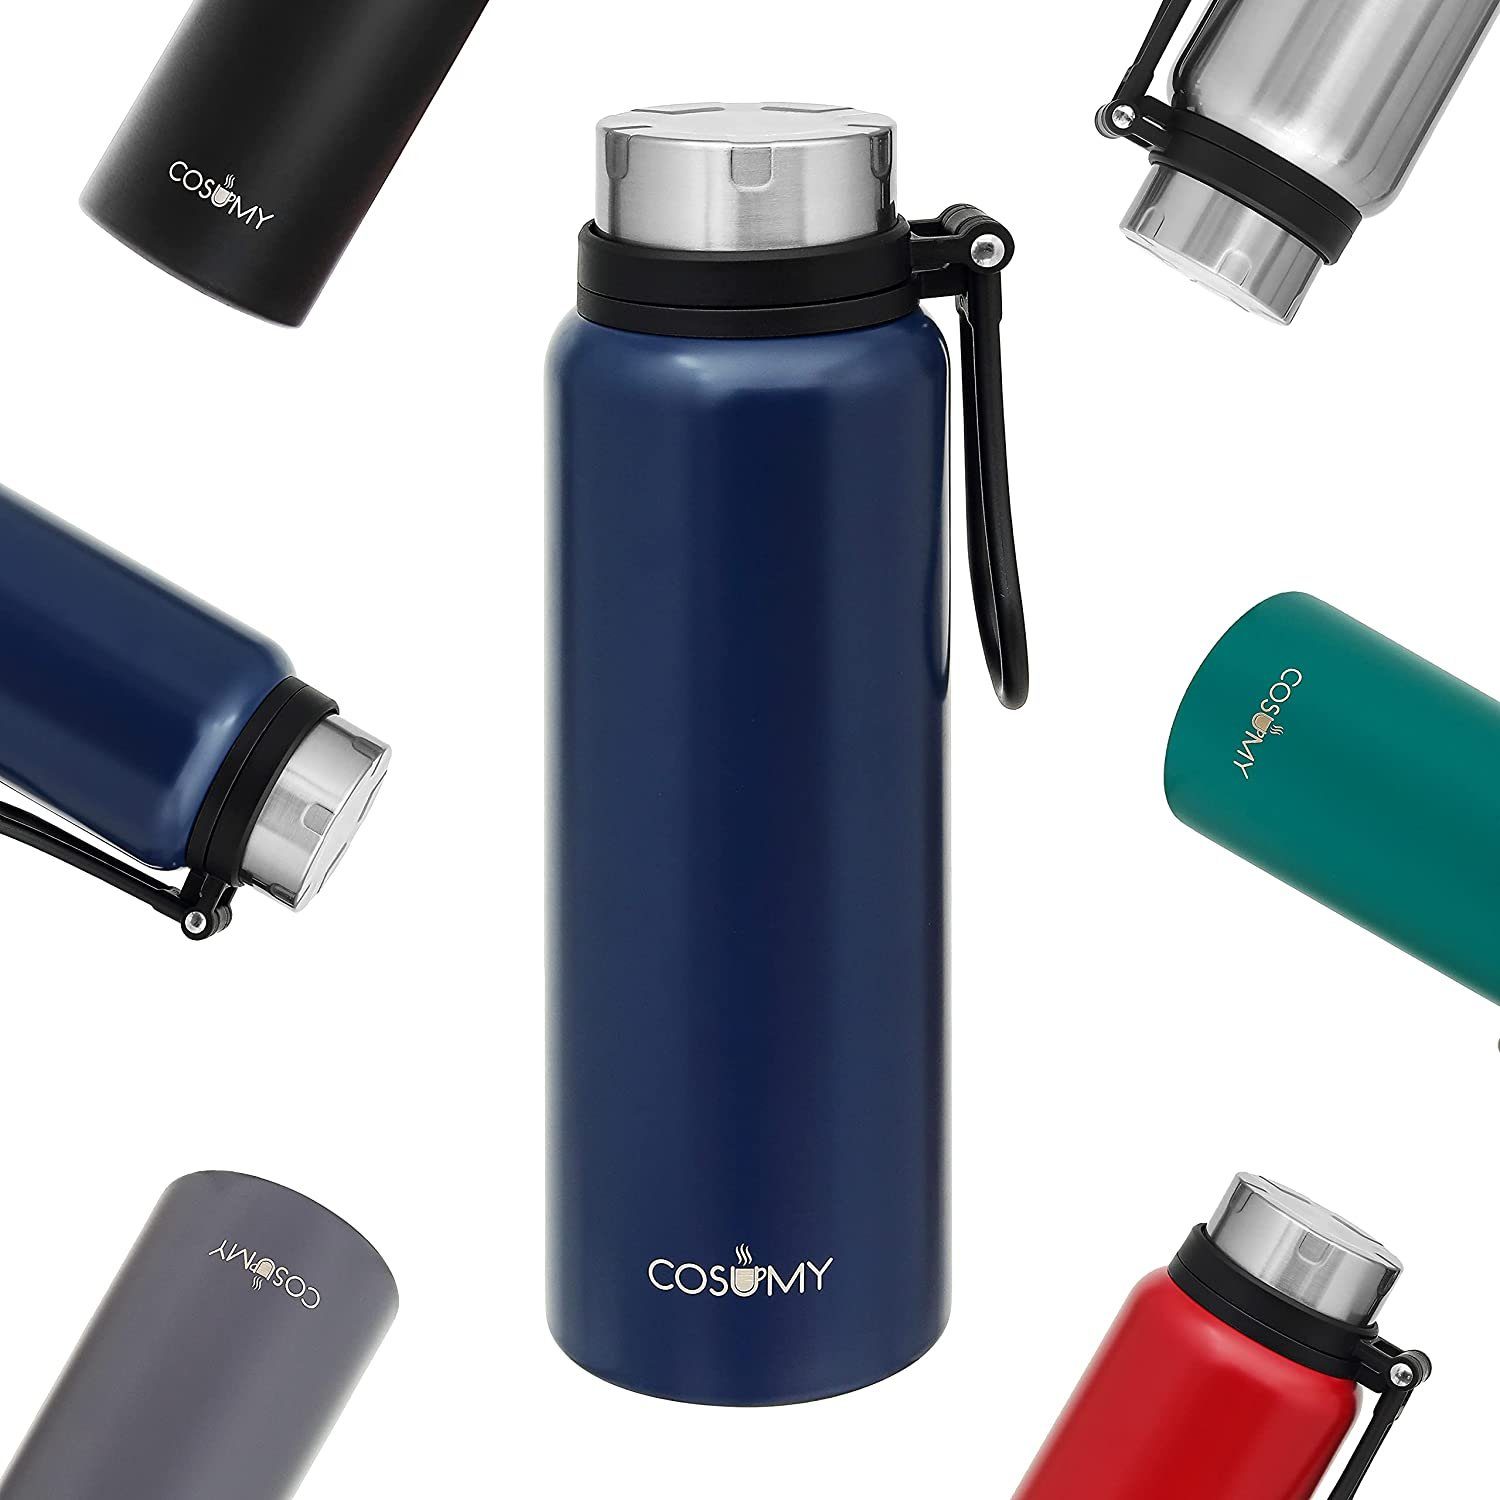 Cosumy Thermobecher Thermosflasche mit Filter 1l Blau, Edelstahl,  Doppelwandiger Edelstahl - Auslaufsicher - Kohlensäure geeignet - Ideal für  Unterwegs